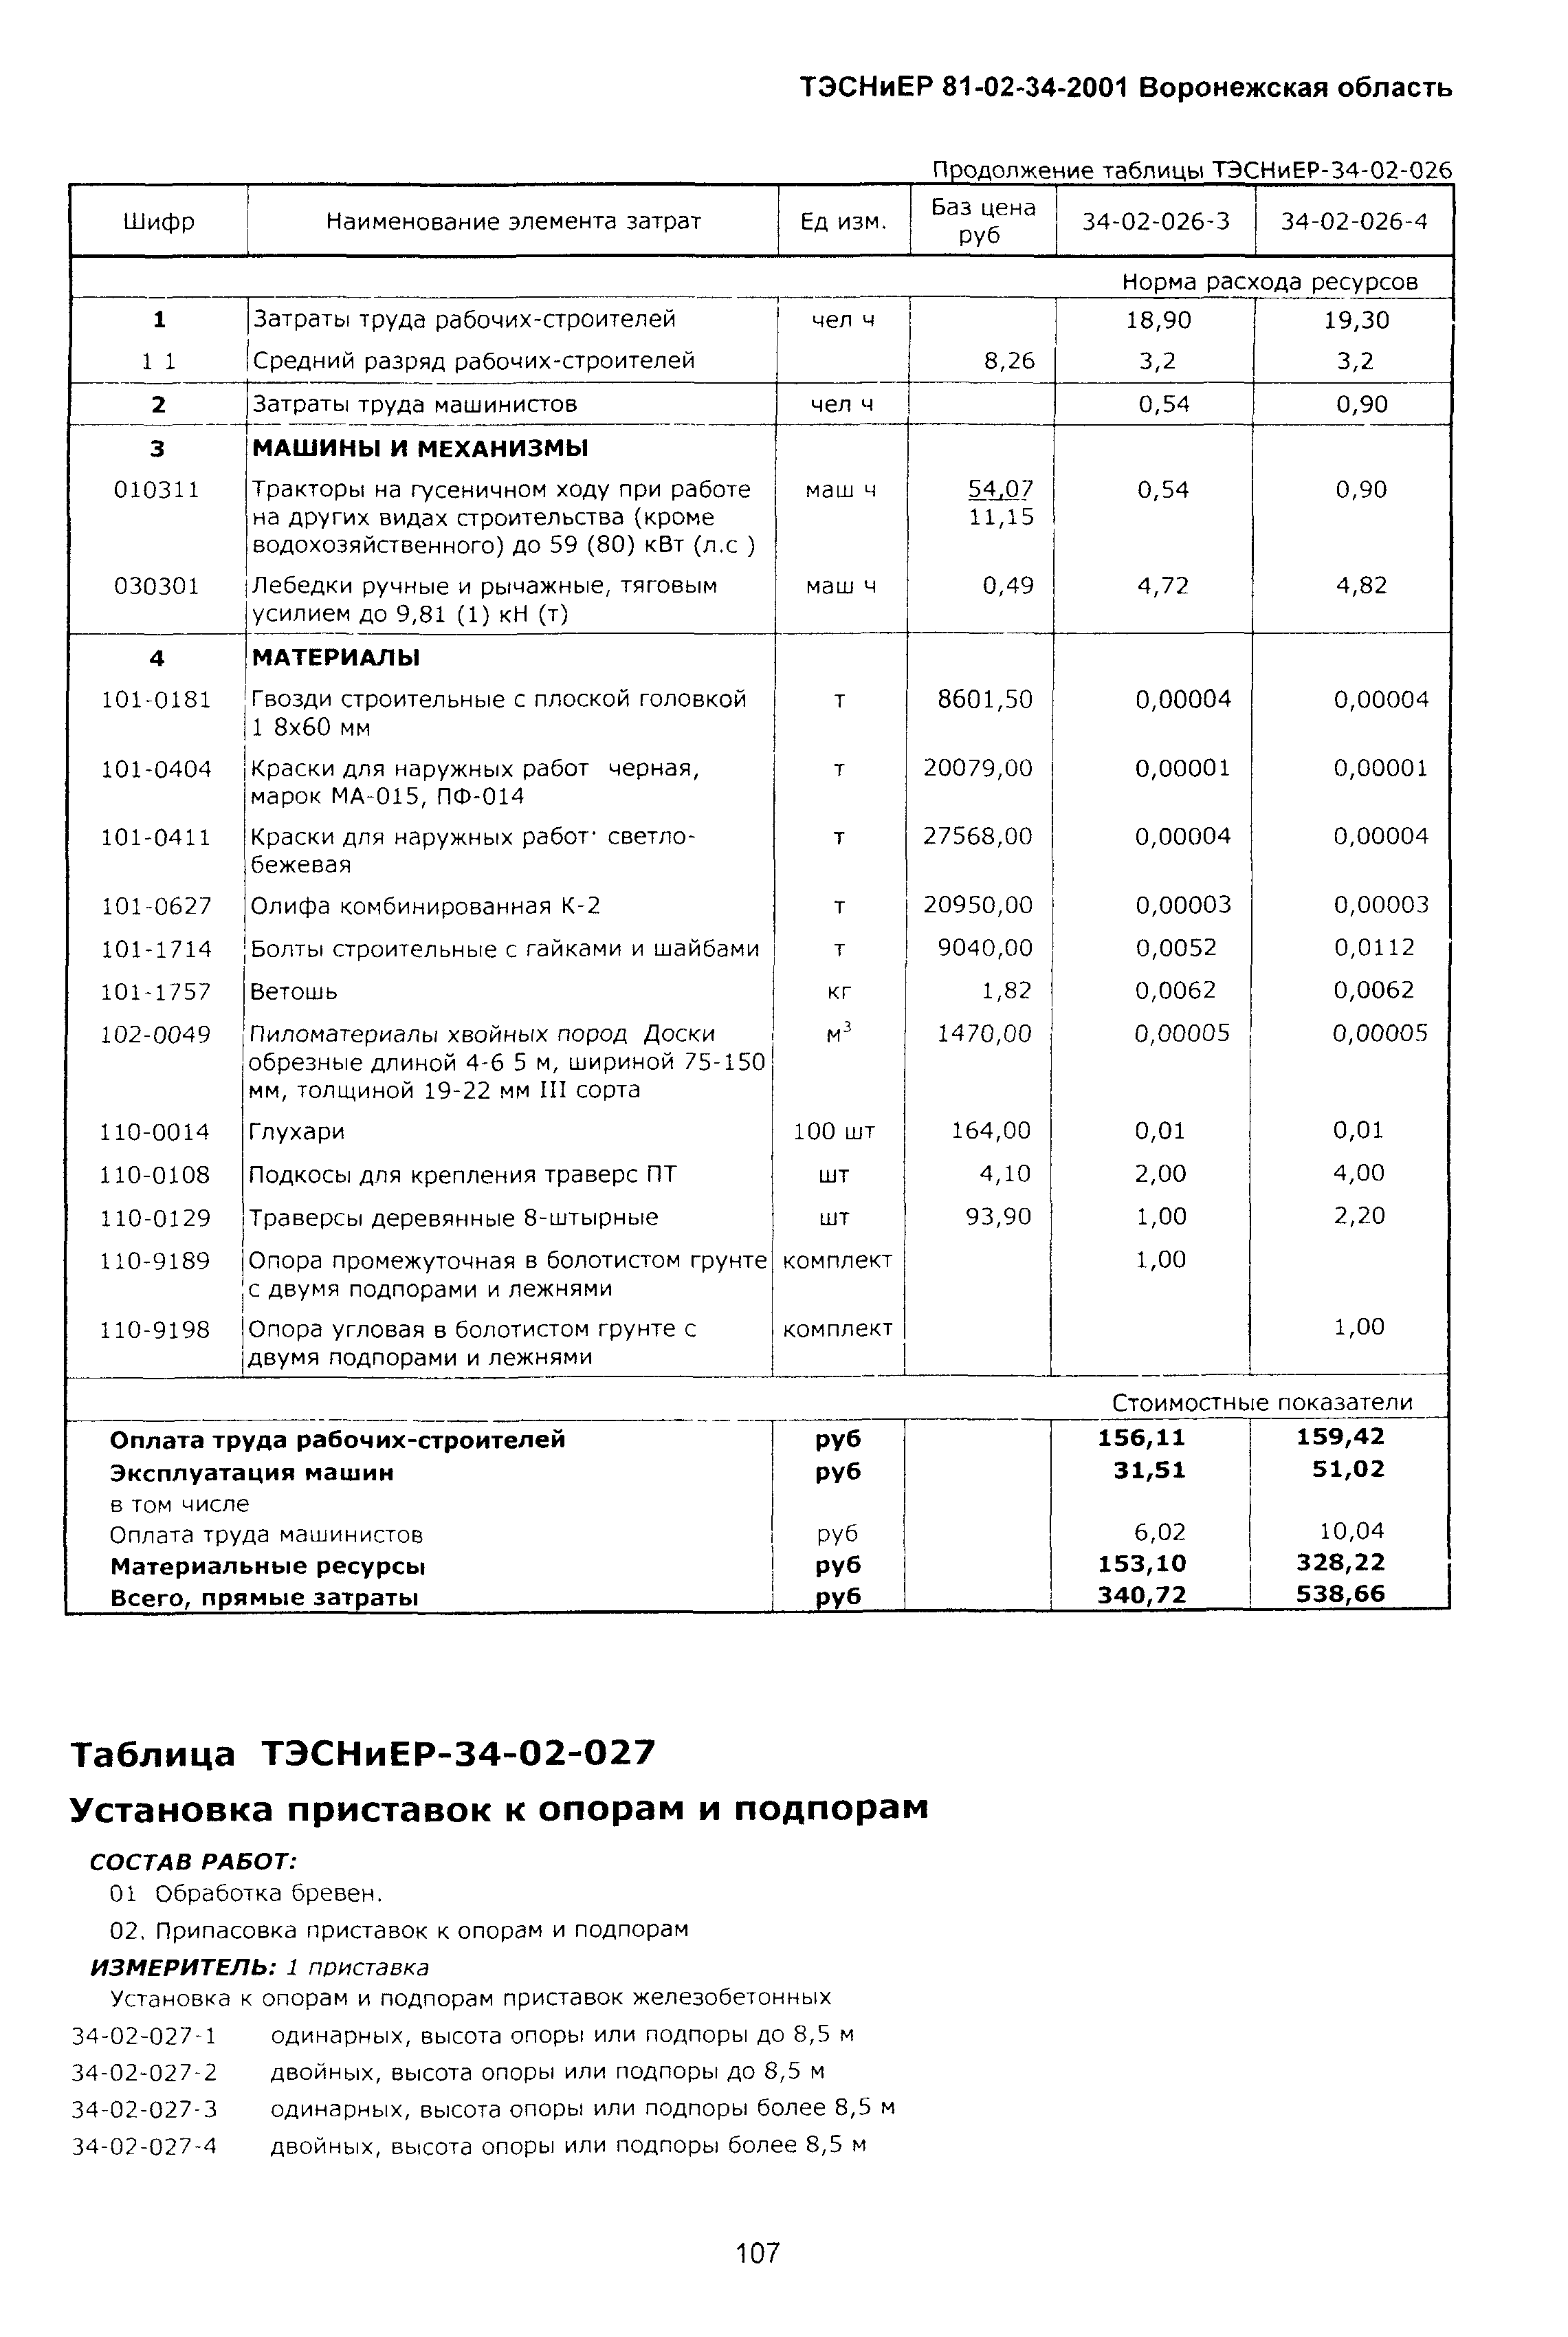 ТЭСНиЕР Воронежской области 81-02-34-2001